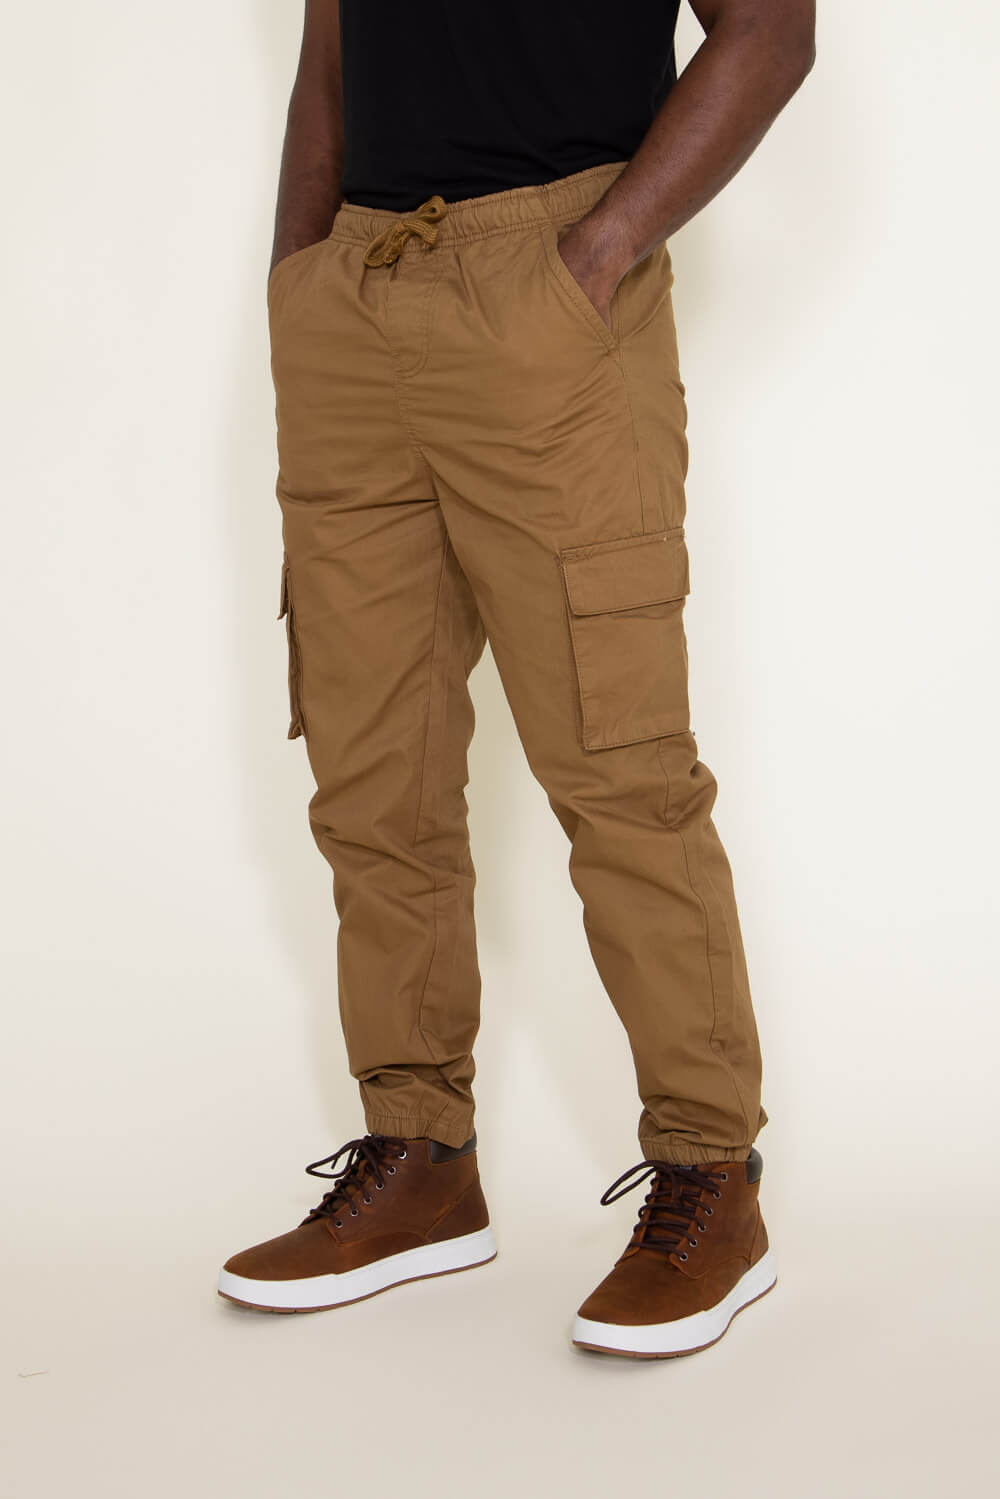 Brown Men Casual Trousers Cargos - Buy Brown Men Casual Trousers Cargos  online in India